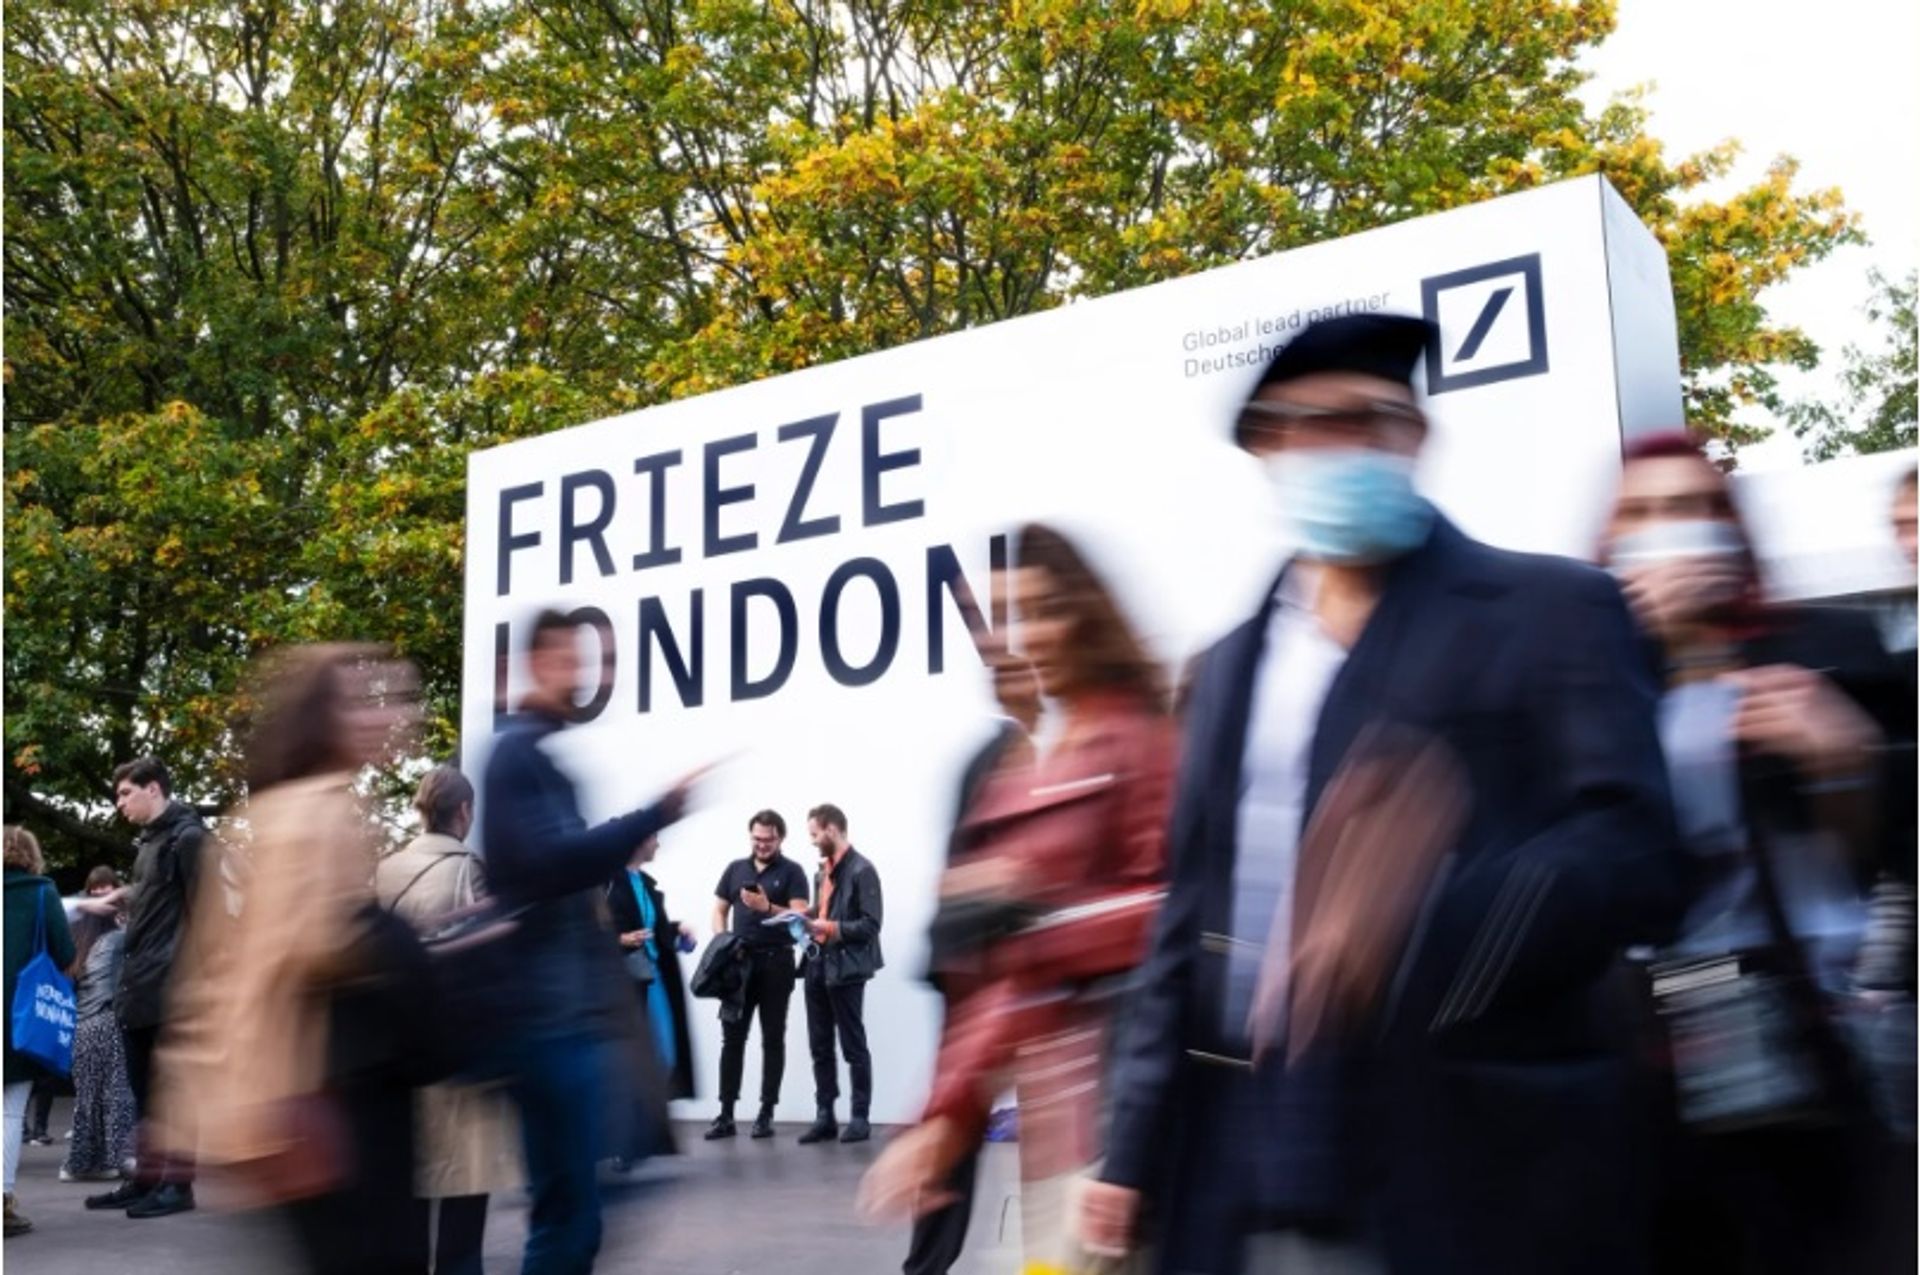 Frieze London 2022 יתקיים בריג'נטס פארק בין ה-12 ל-16 באוקטובר

תמונה מאת לינדה ניילינד. באדיבות לינדה ניילינד/פרייז